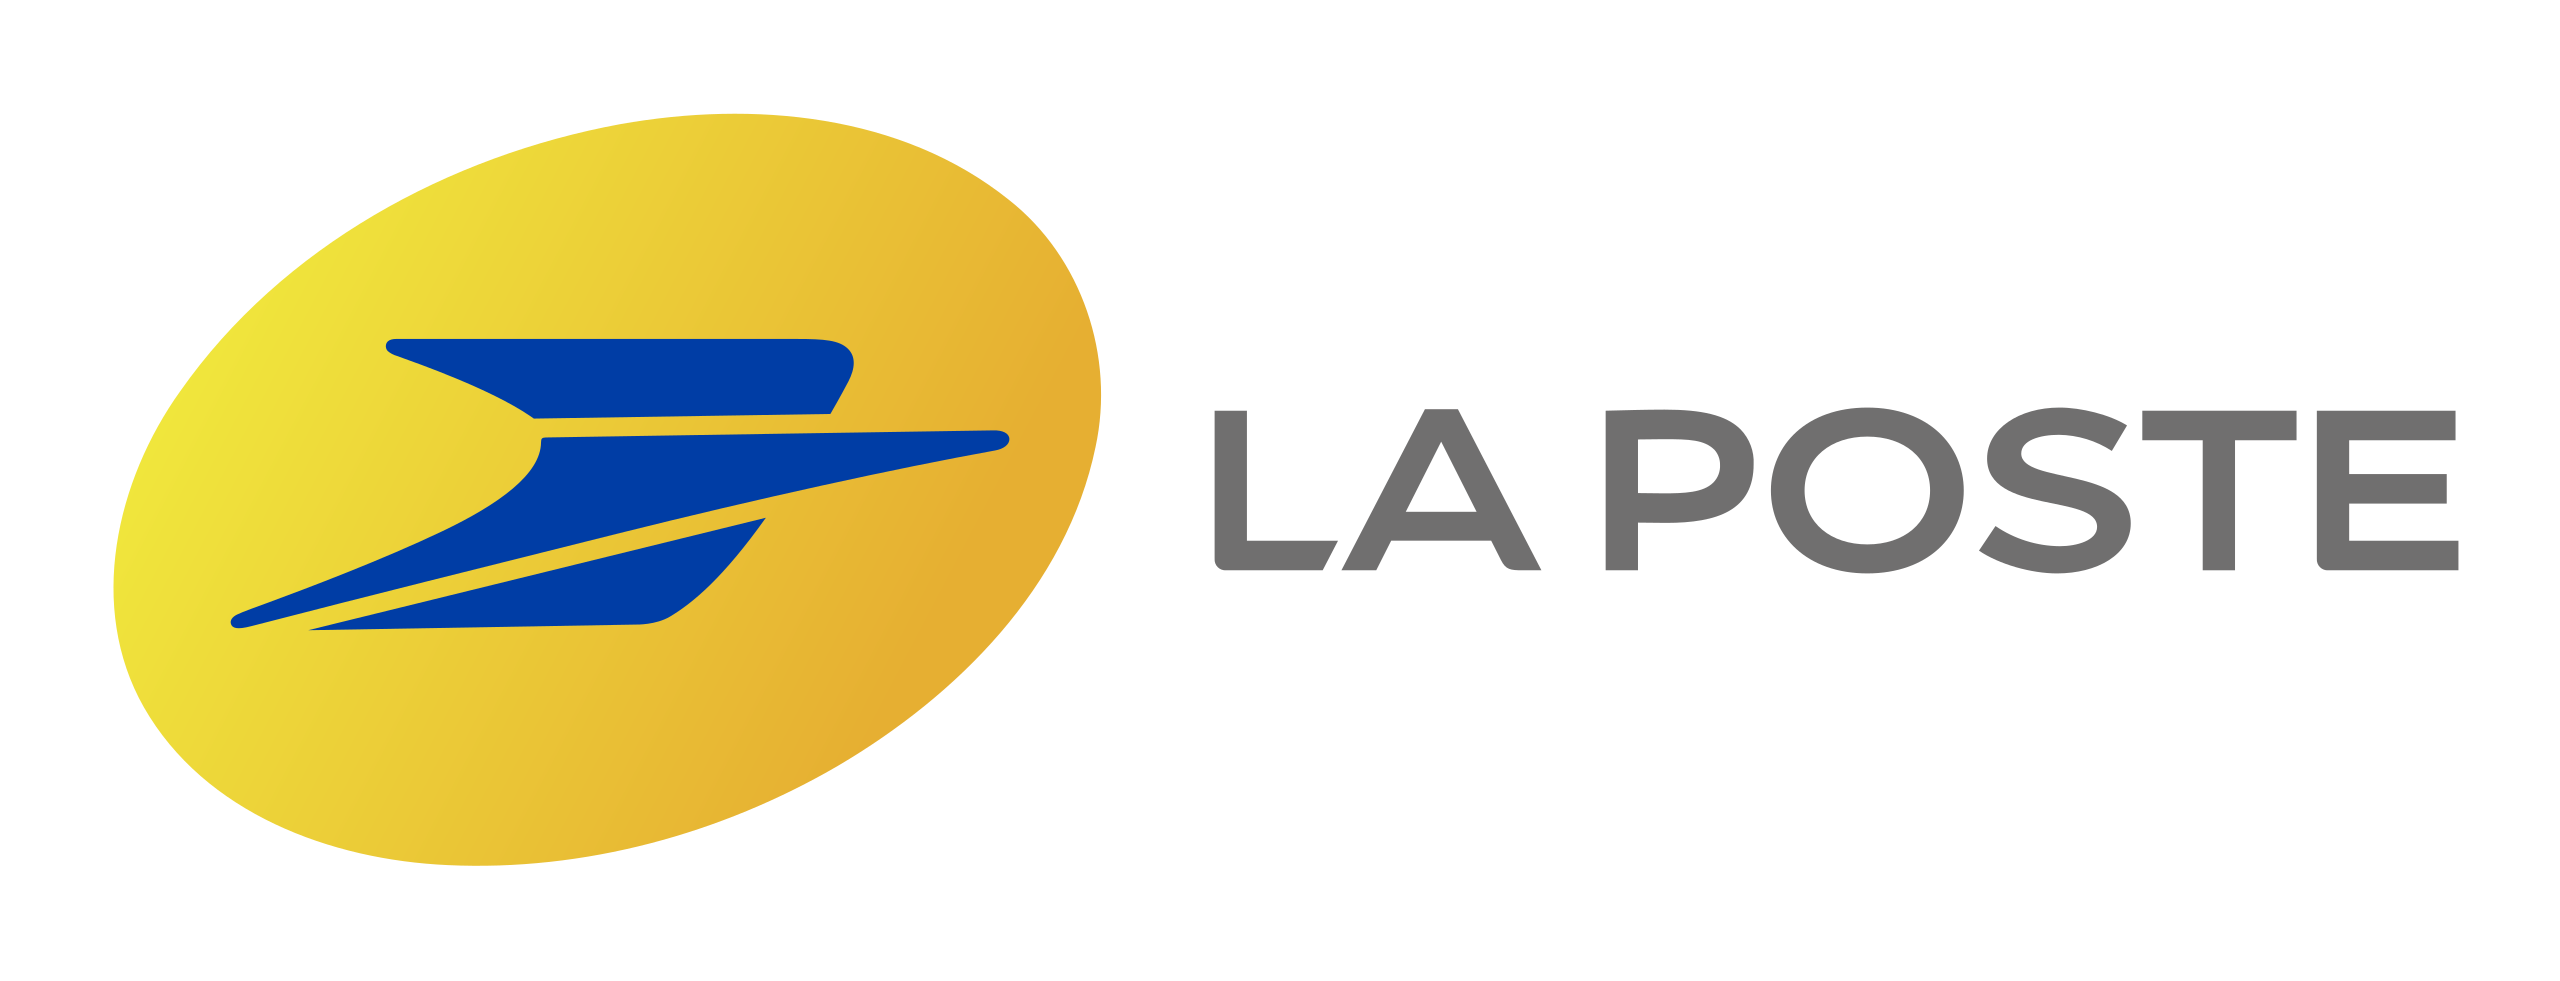 2560px-La_Poste_logo